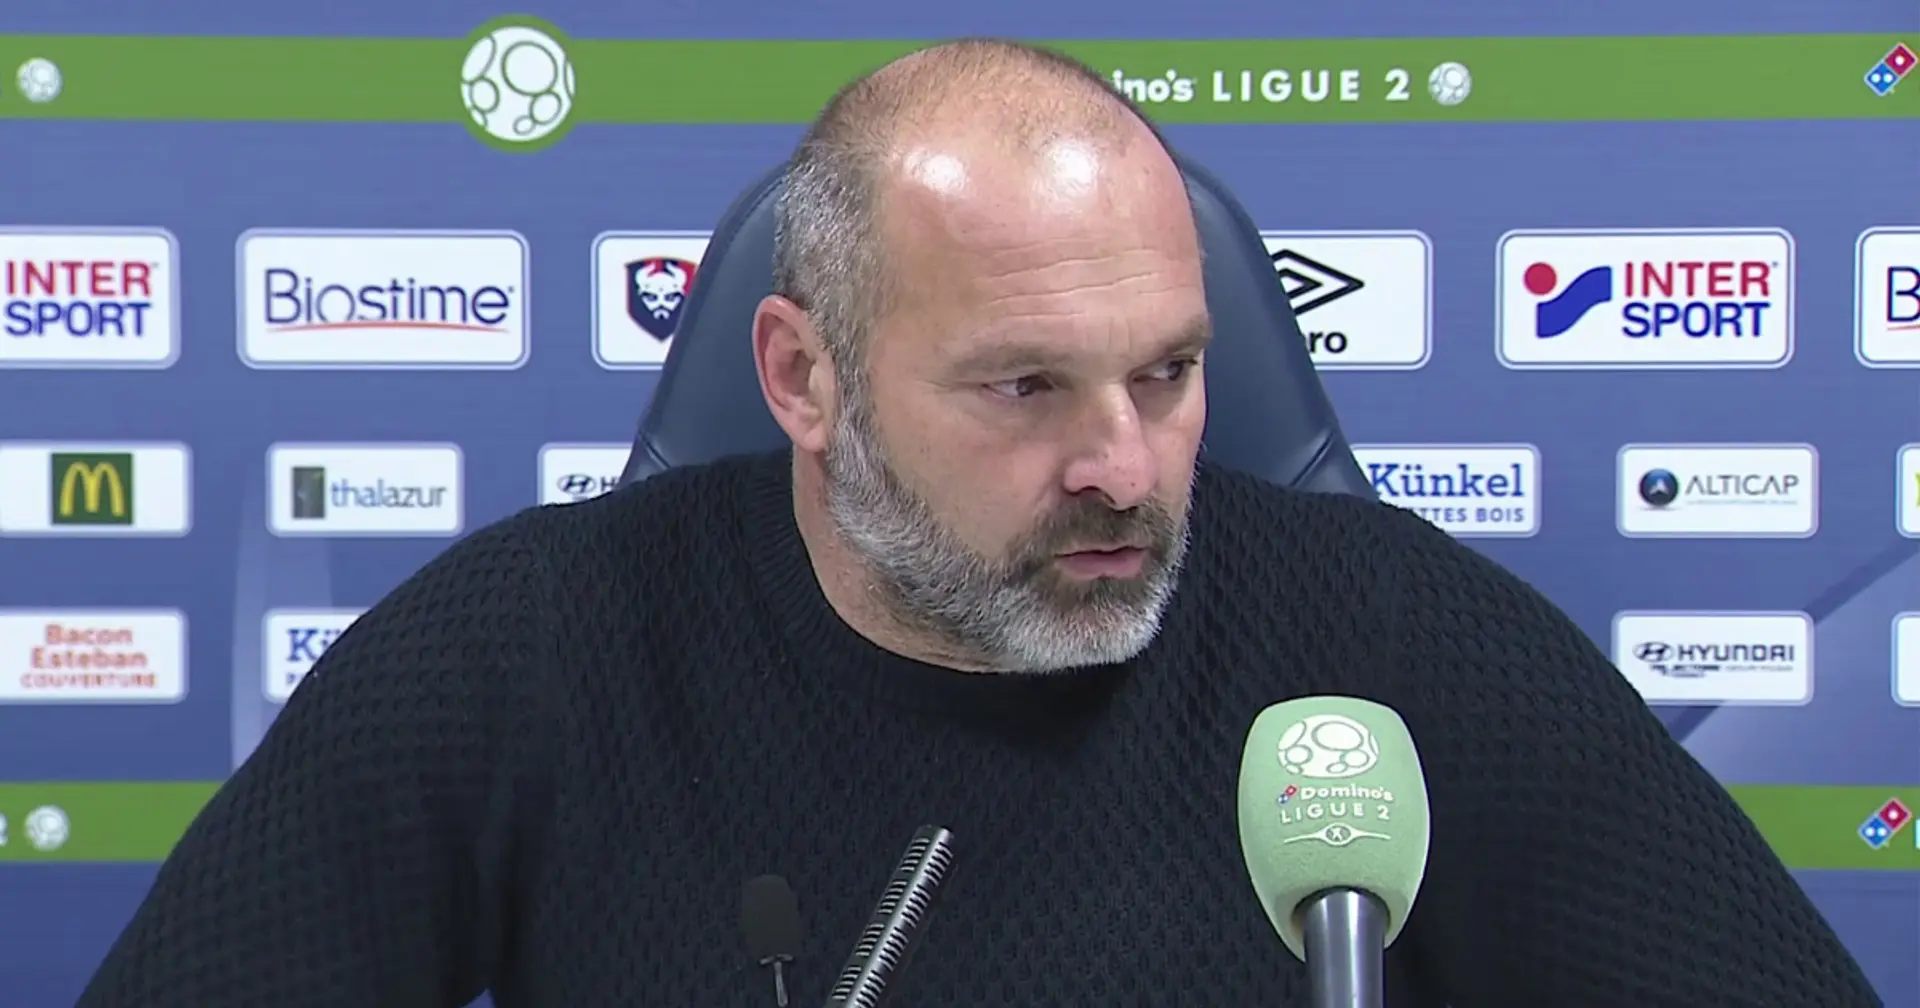 "J’espère que l’on va donner une bonne image de notre équipe" : L'entraineur de Caen espère voir un beau match de son équipe face au PSG